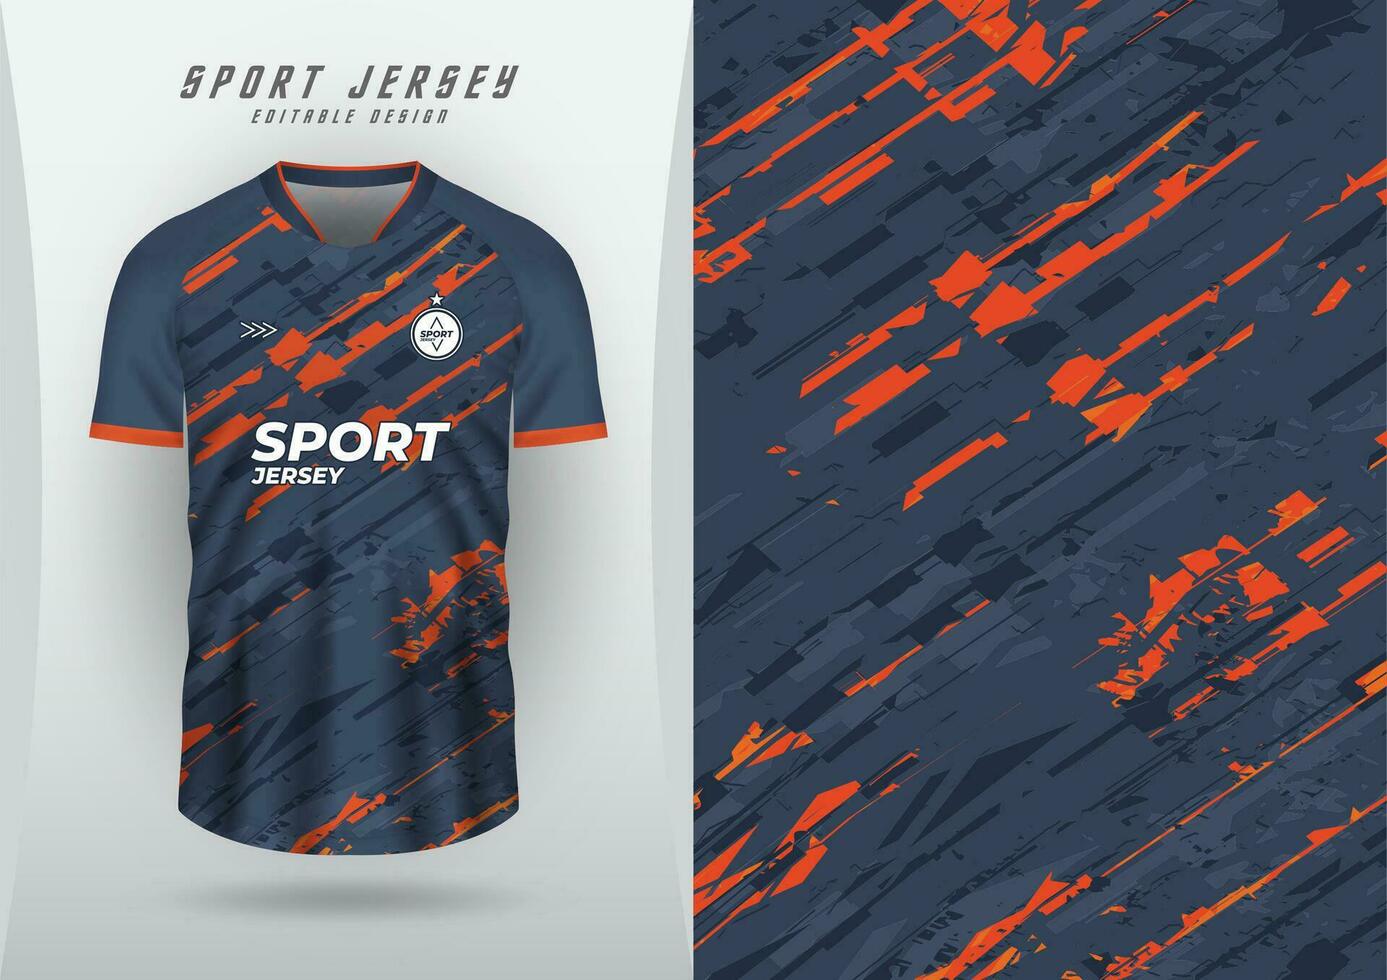 achtergrond voor sport- Jersey, voetbal Jersey, rennen Jersey, racing Jersey, patroon, oranje schuin grunge, donker grijs tonen. vector